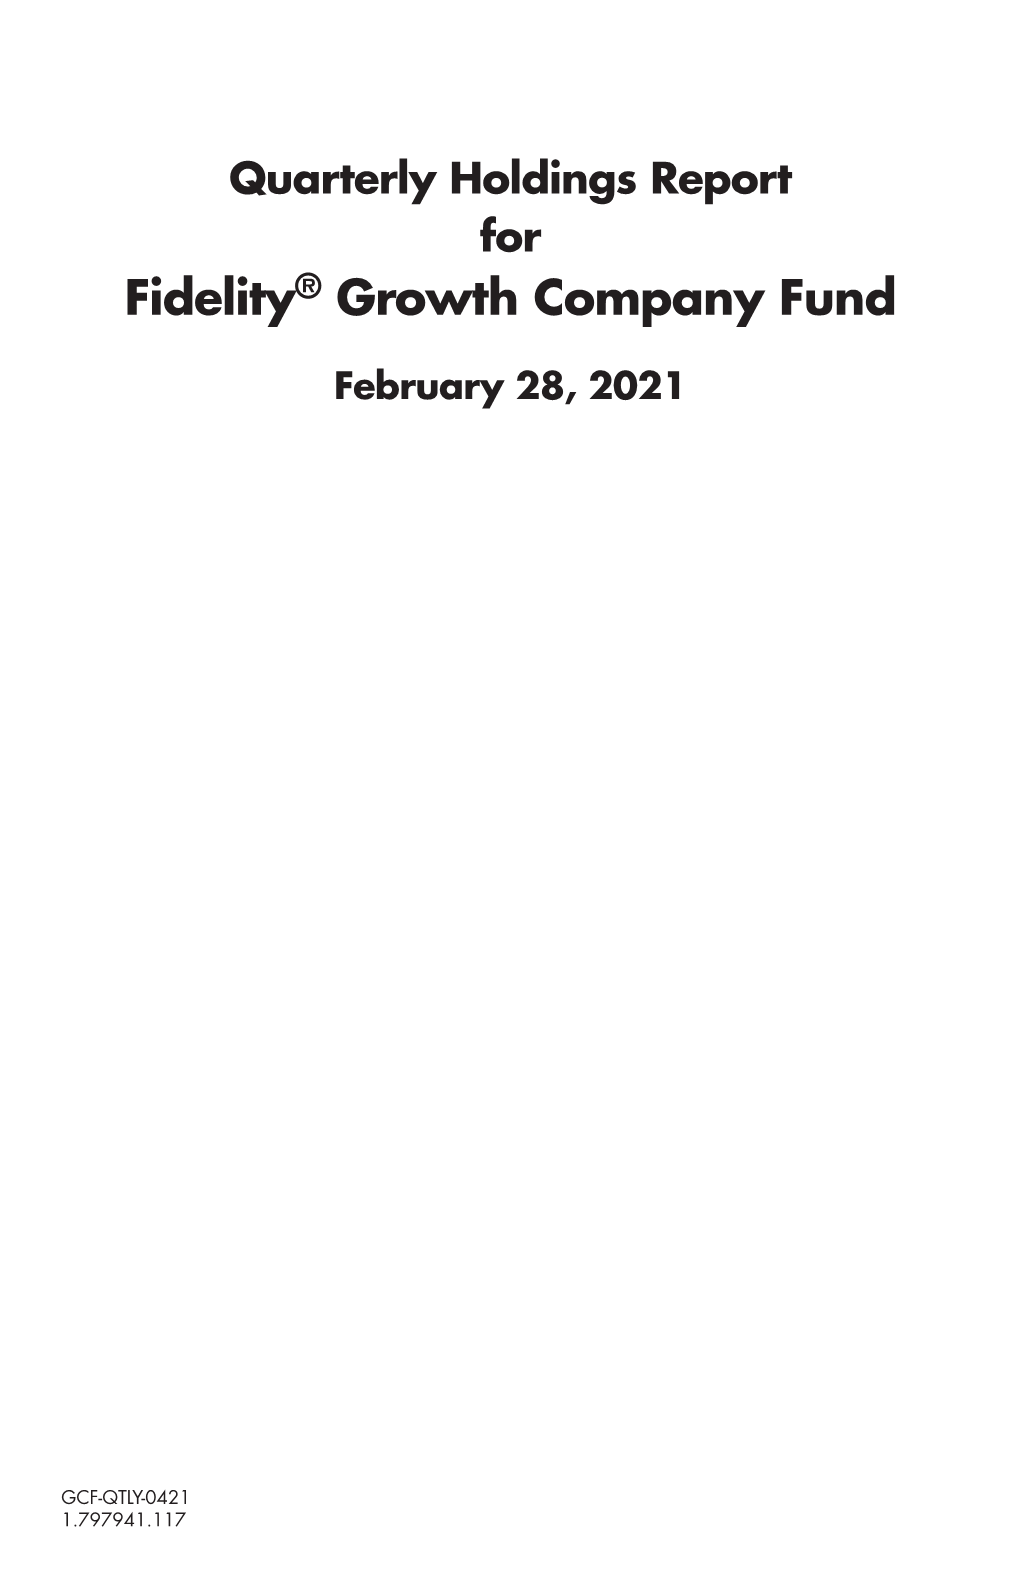 Fidelity® Growth Company Fund